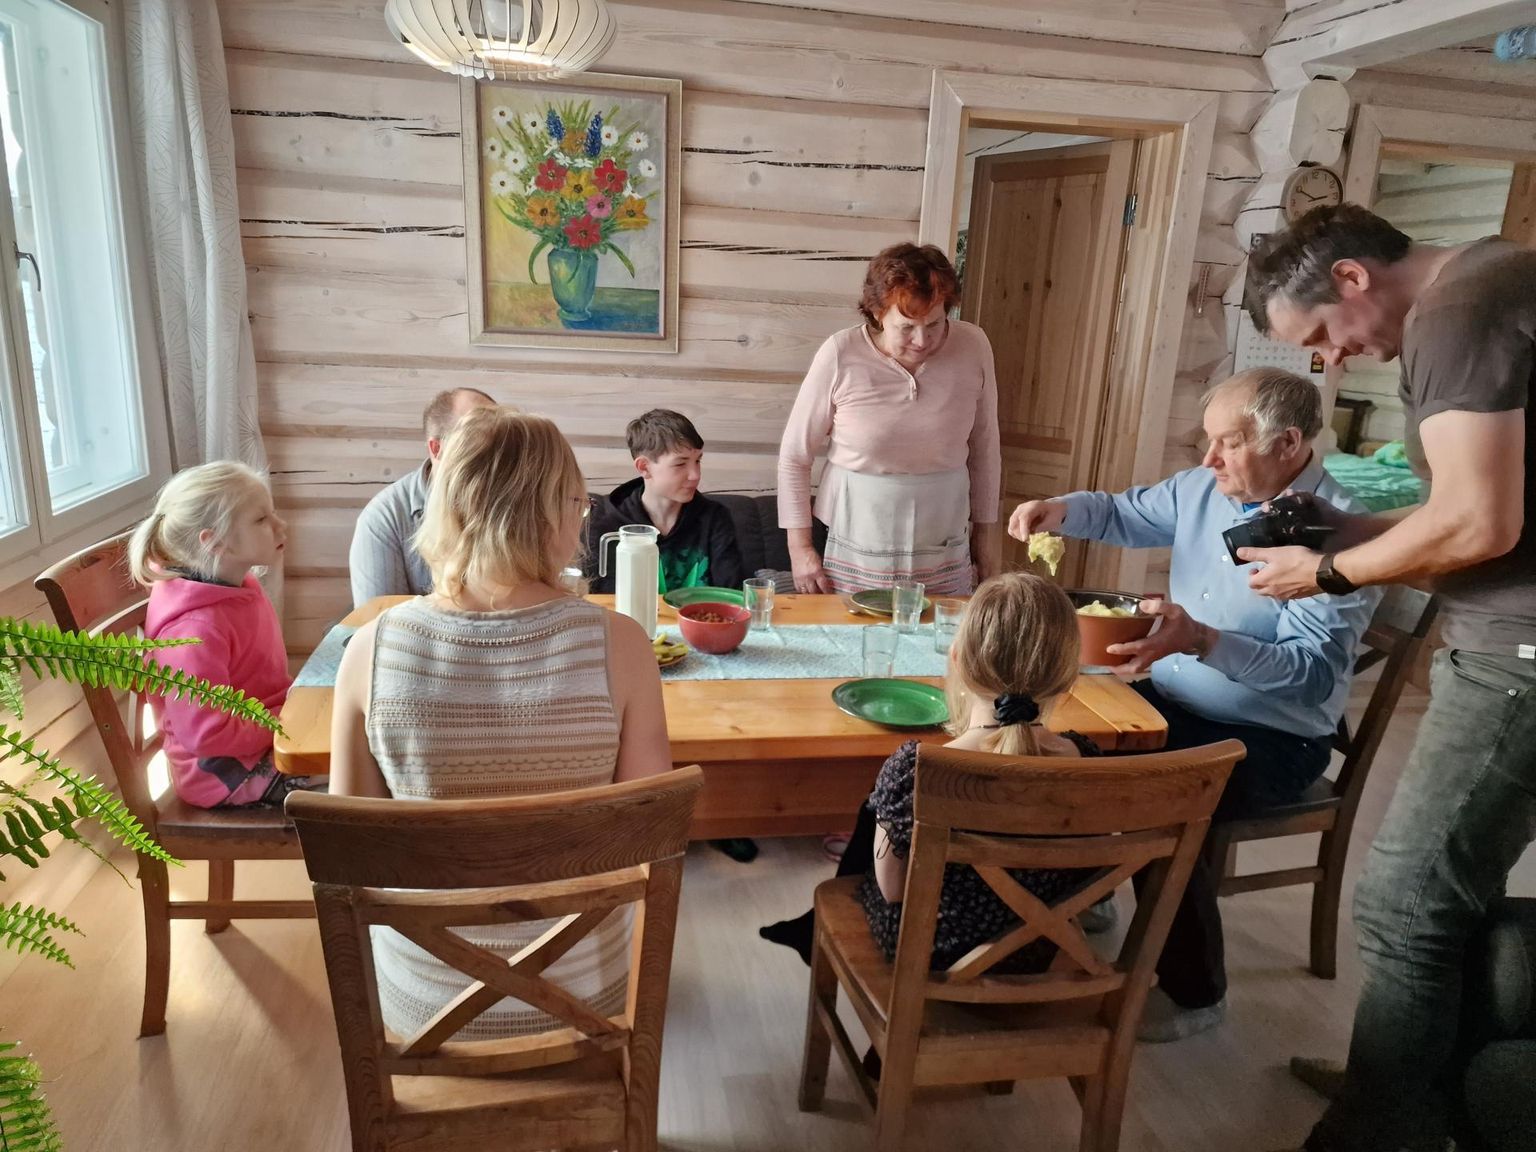 Tõrva vallas asuva Lümatu talu pererahva, Õie ja Mihkel Pavelsoni
kodus filmiti UNESCO tarvis Mulgi pudru valmistamist ja söömist.